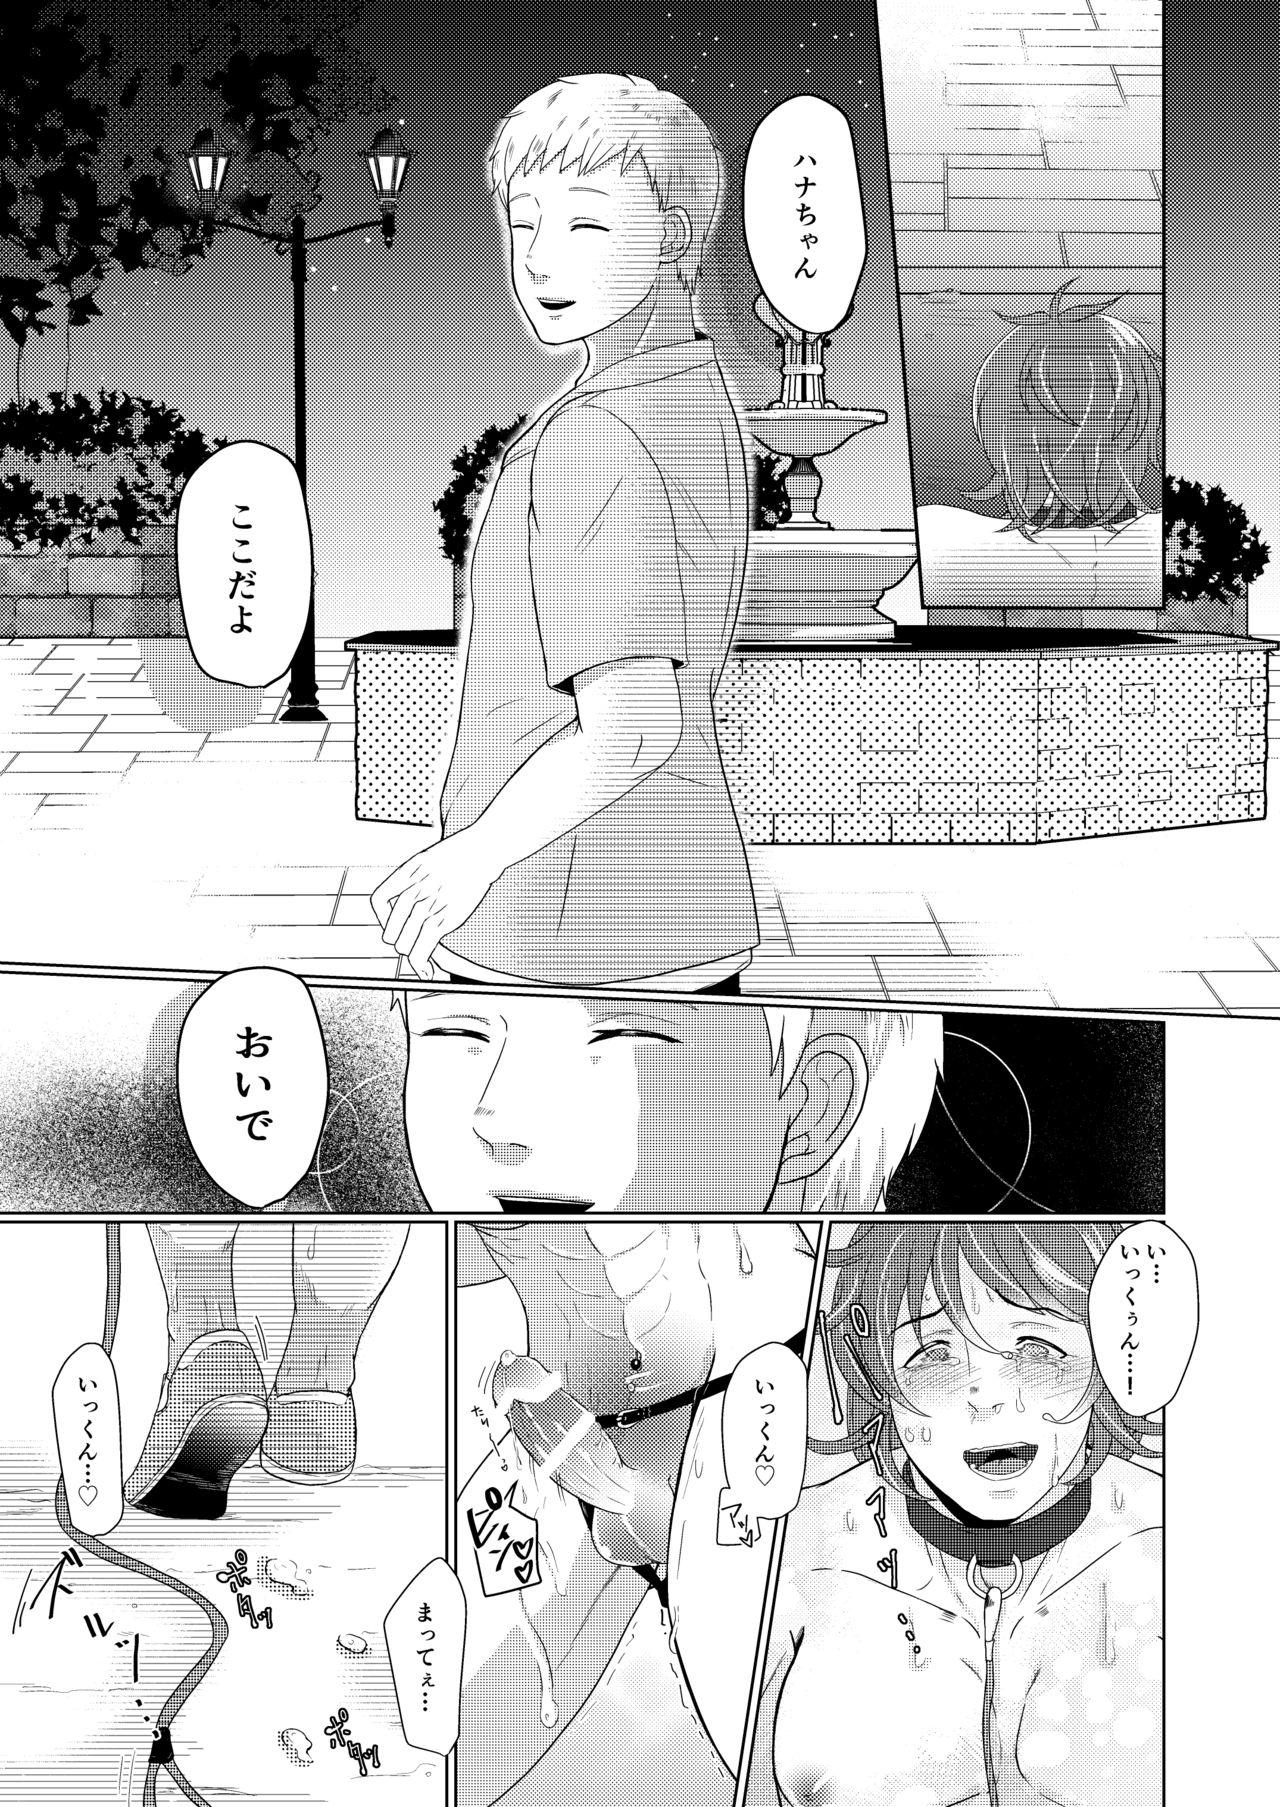 SM調教漫画③夜のお散歩編 7